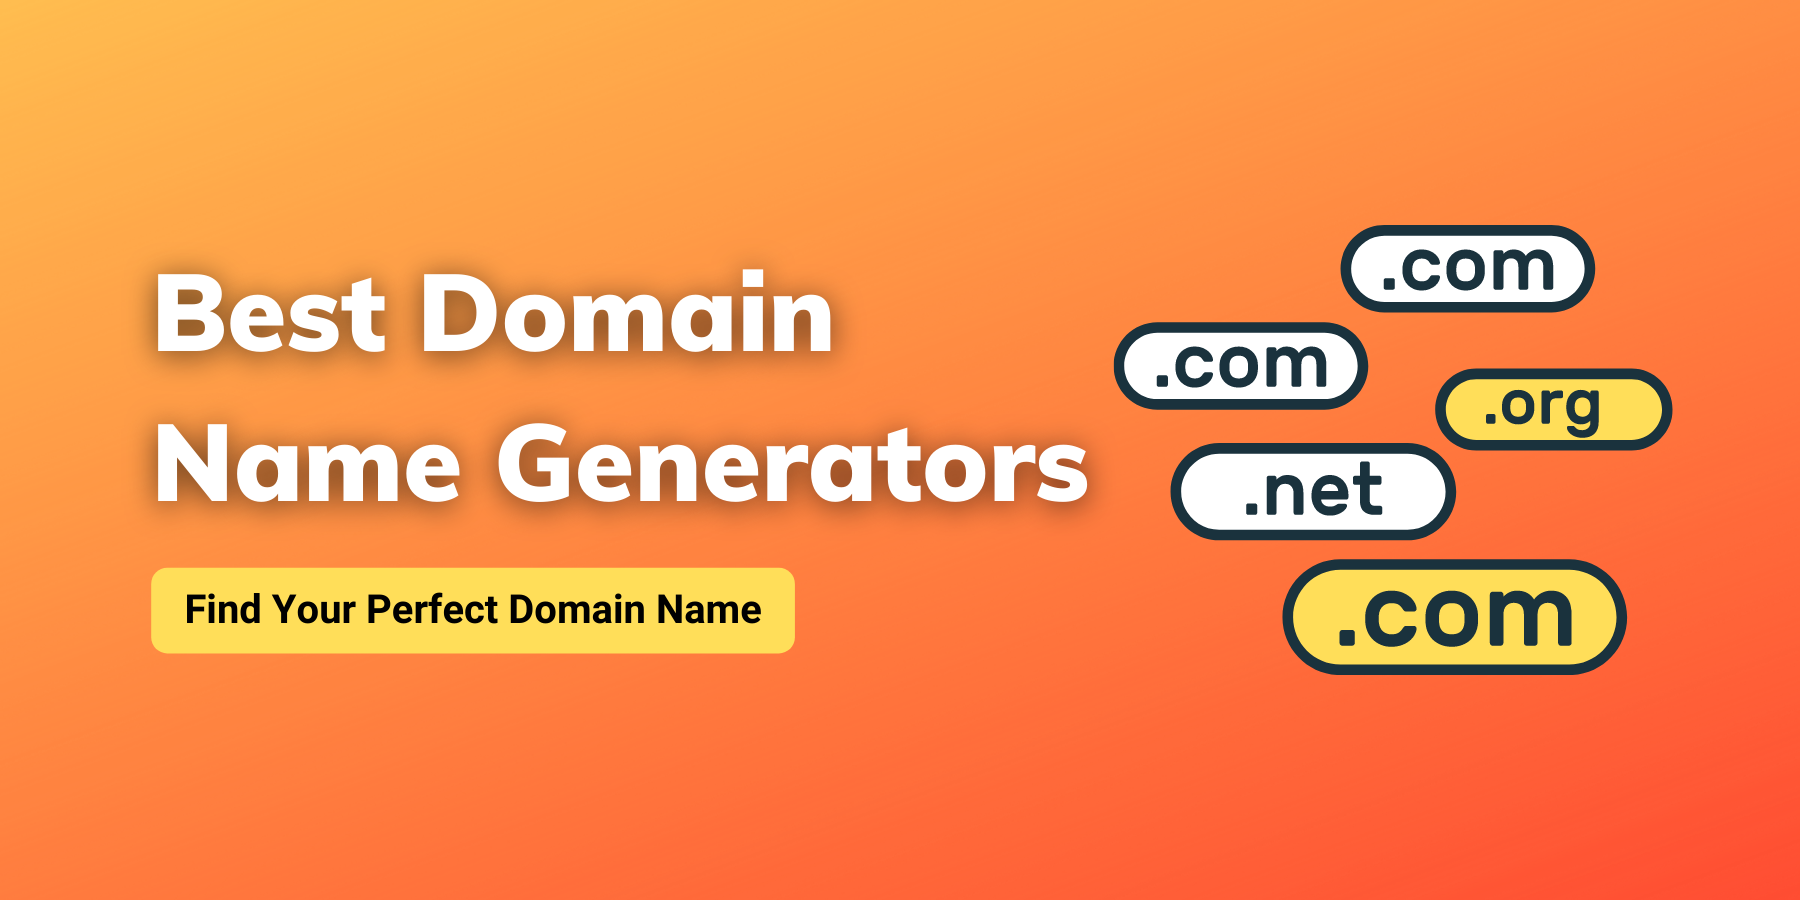 Best Domain Name Generators Tools